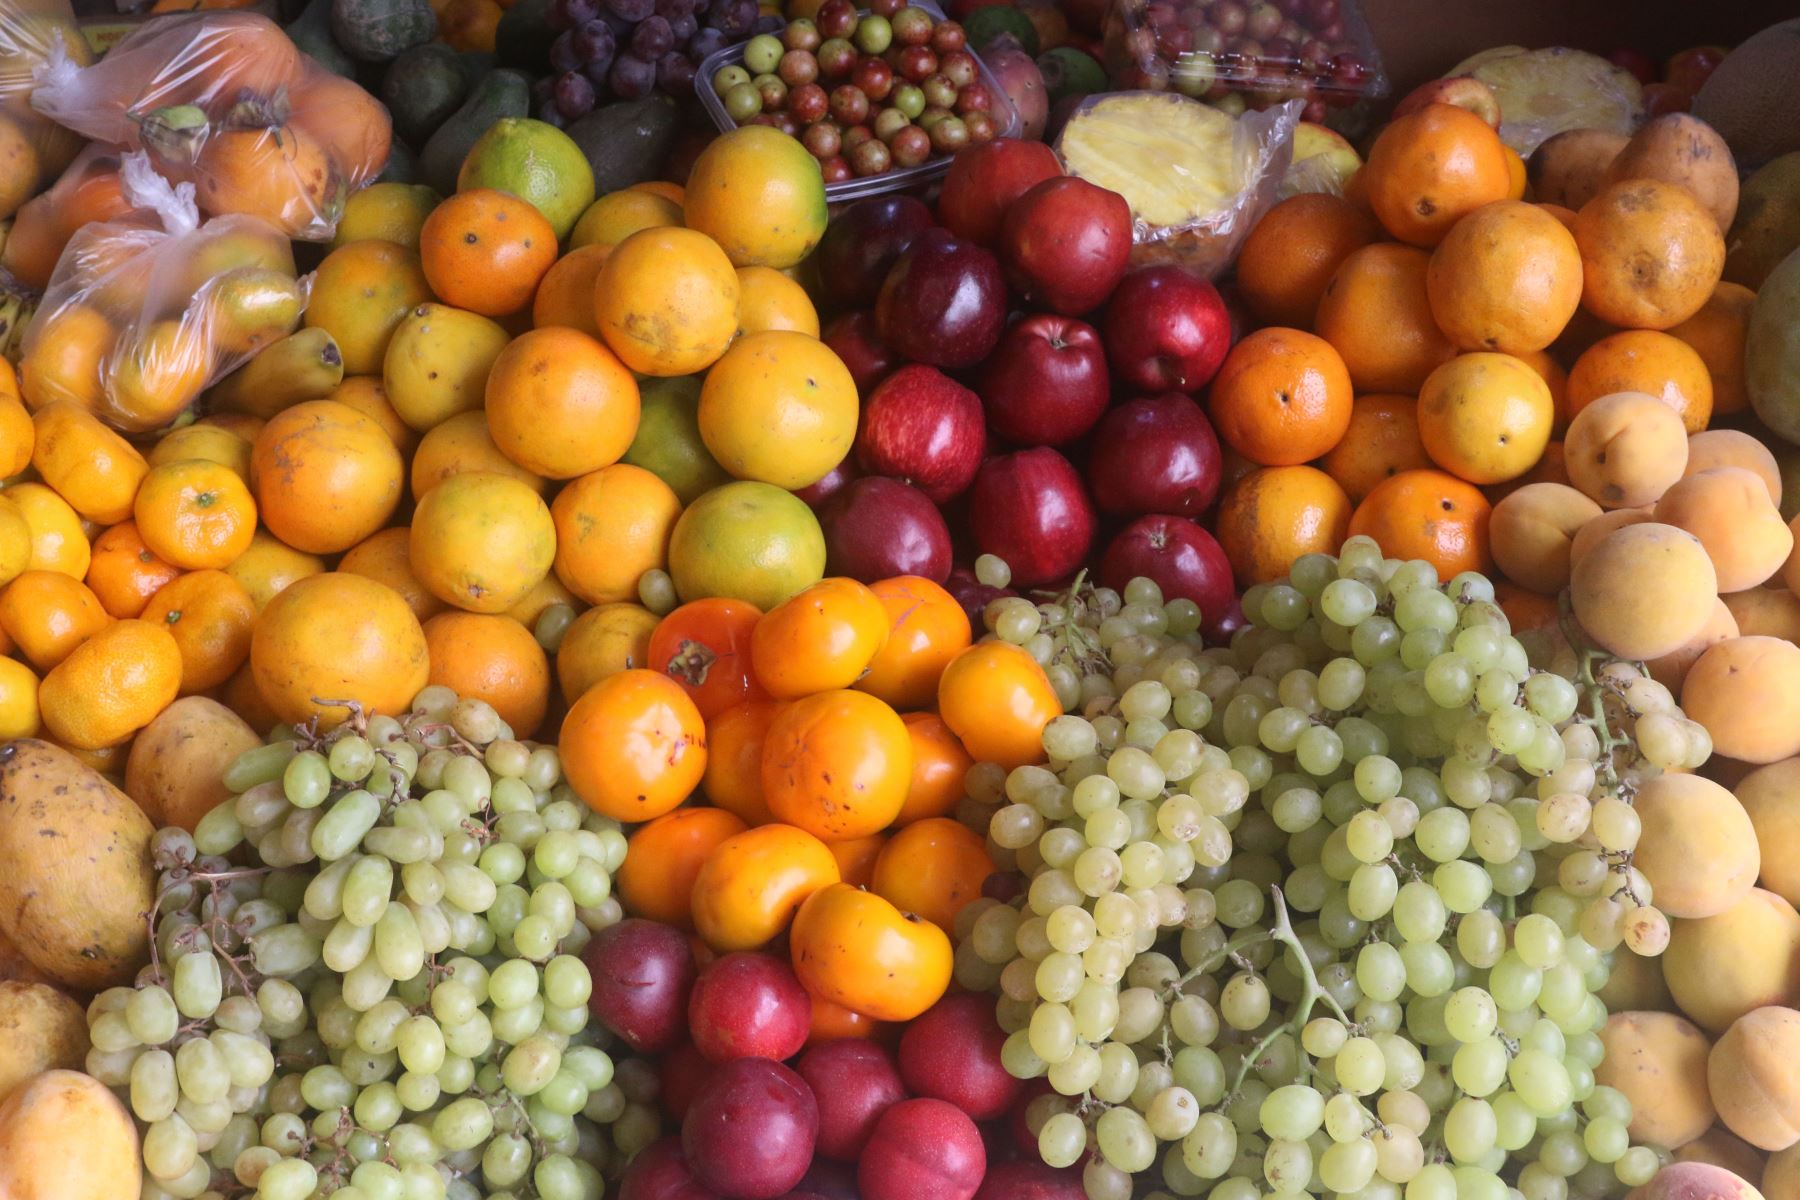 En la Semana Nacional de Frutas y verduras, la Universidad Nacional Agraria La Molina destacó que impulsa investigaciones para optimizar la producción nacional. ANDINA/Eddy Ramos